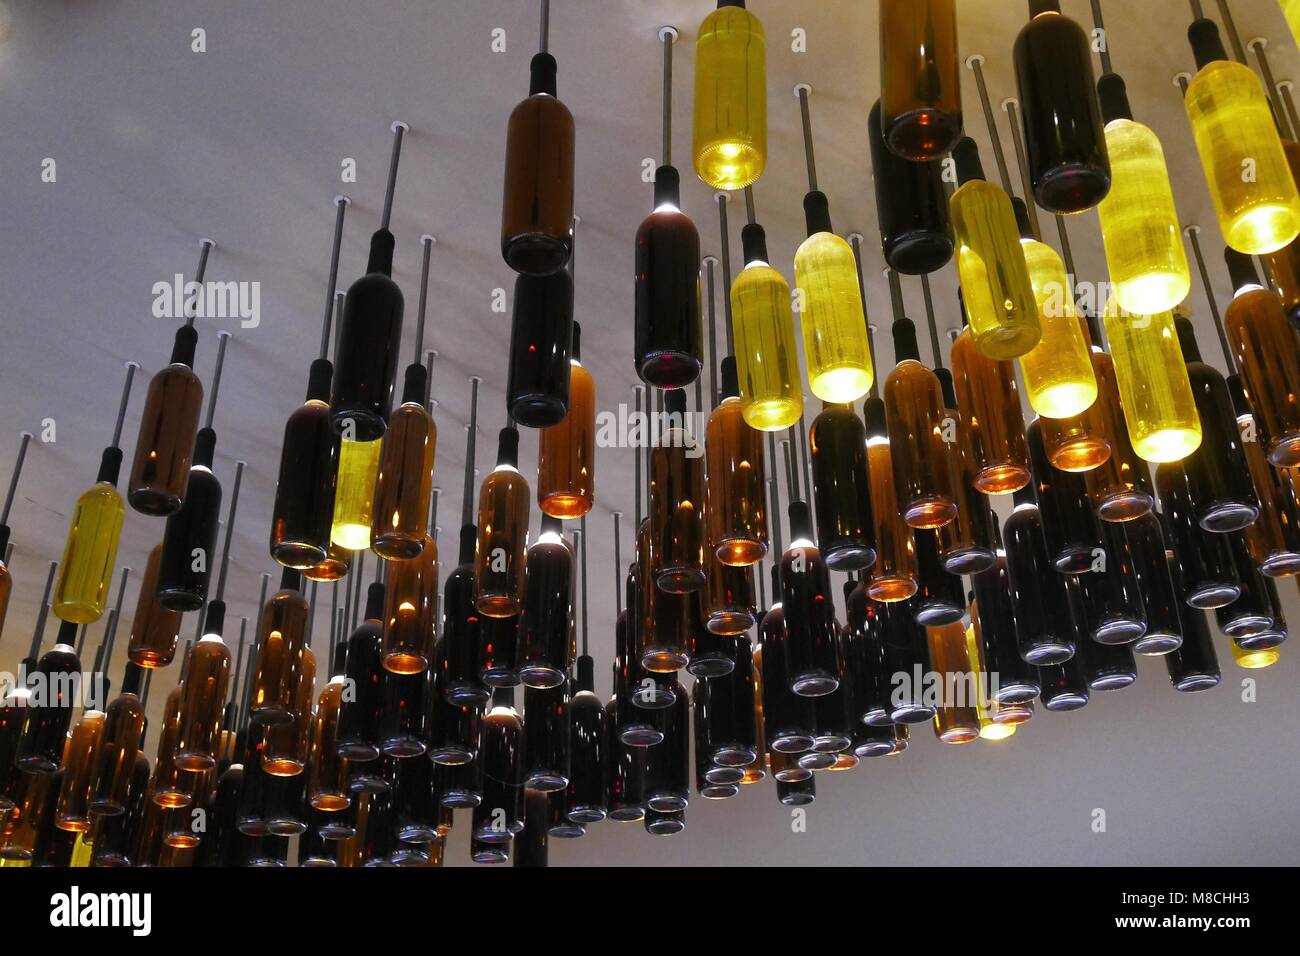 Kreative Wiederverwendung von weinflaschen als Lampen an der Decke installiert Stockfoto